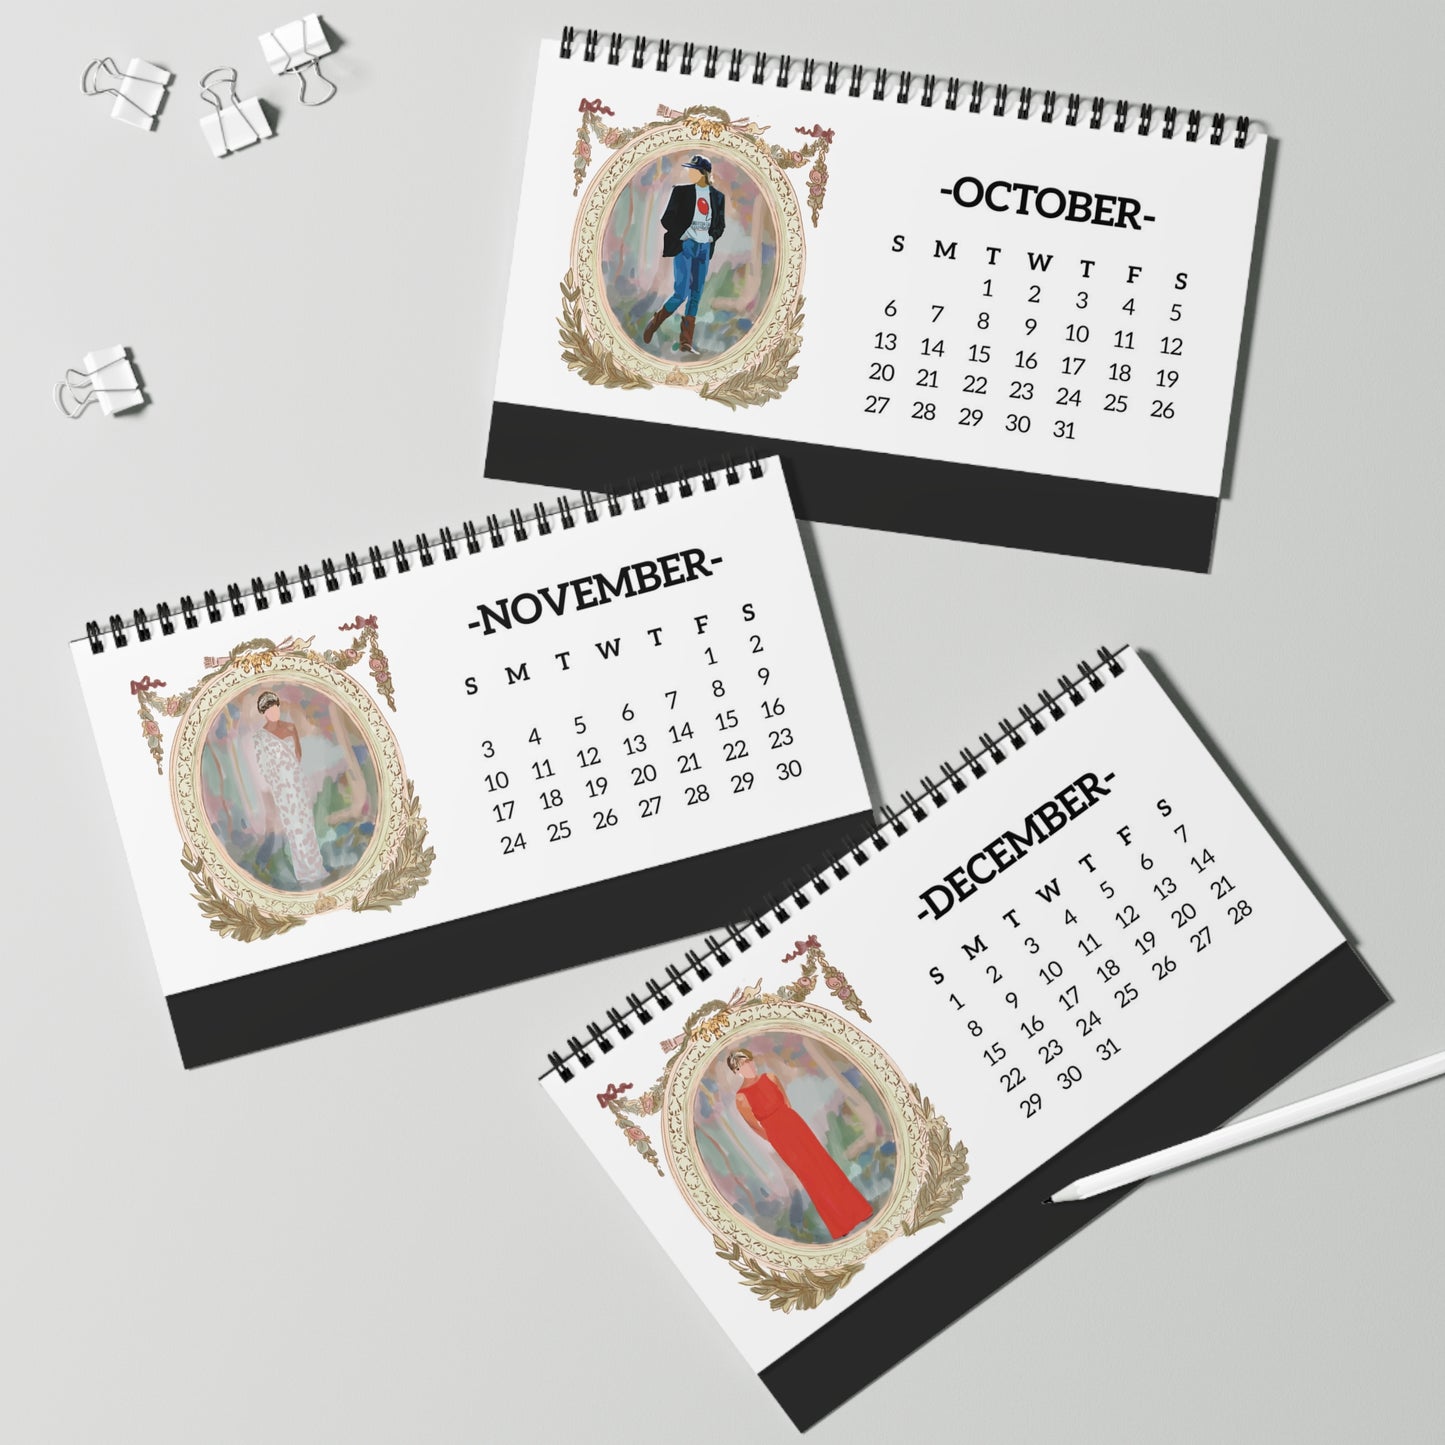 Princess Diana Desk Calendar